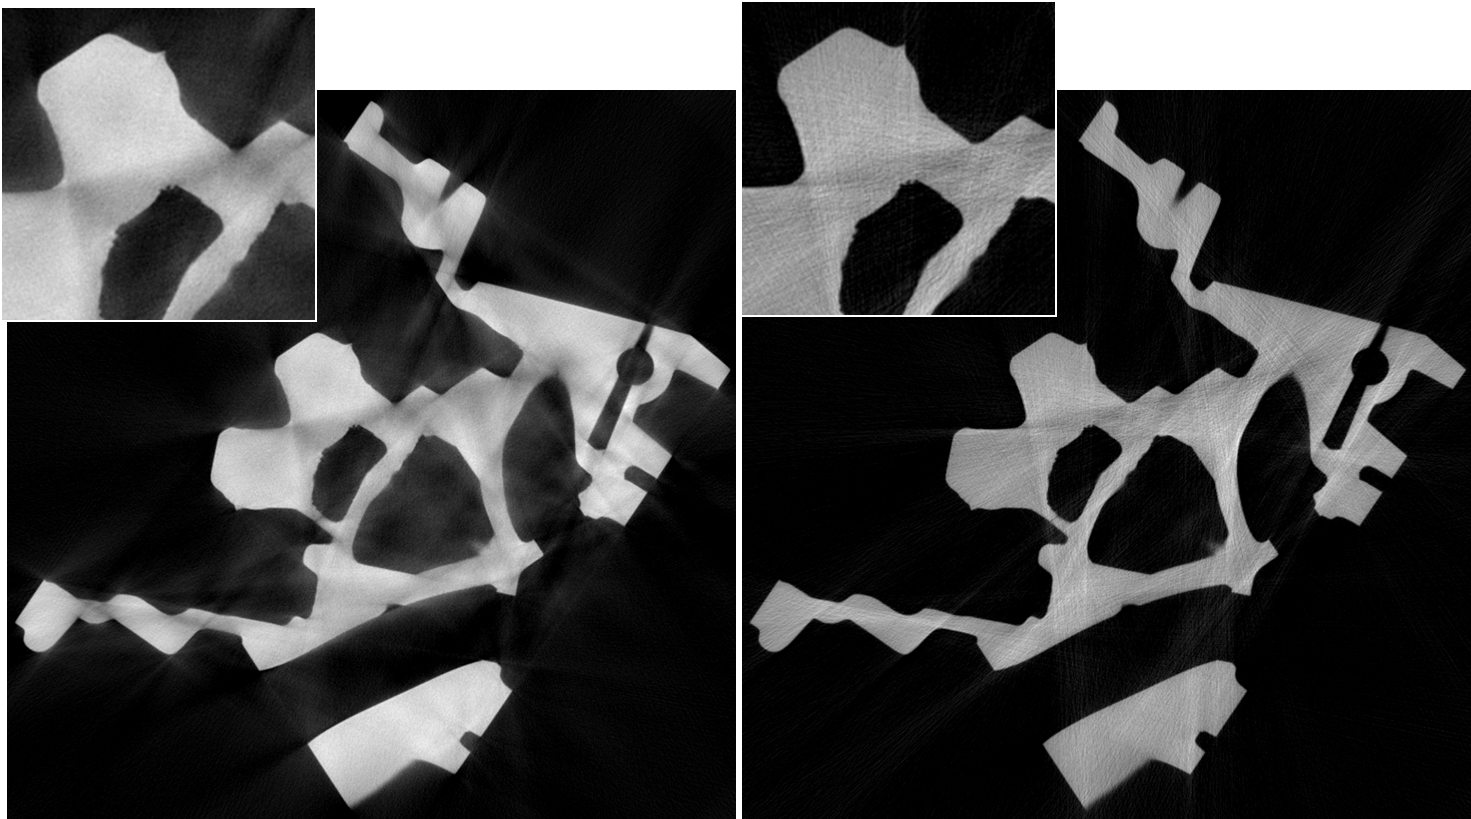 Röntgenbild eines Zylinderkopfs - korrigiert und unkorrigiert